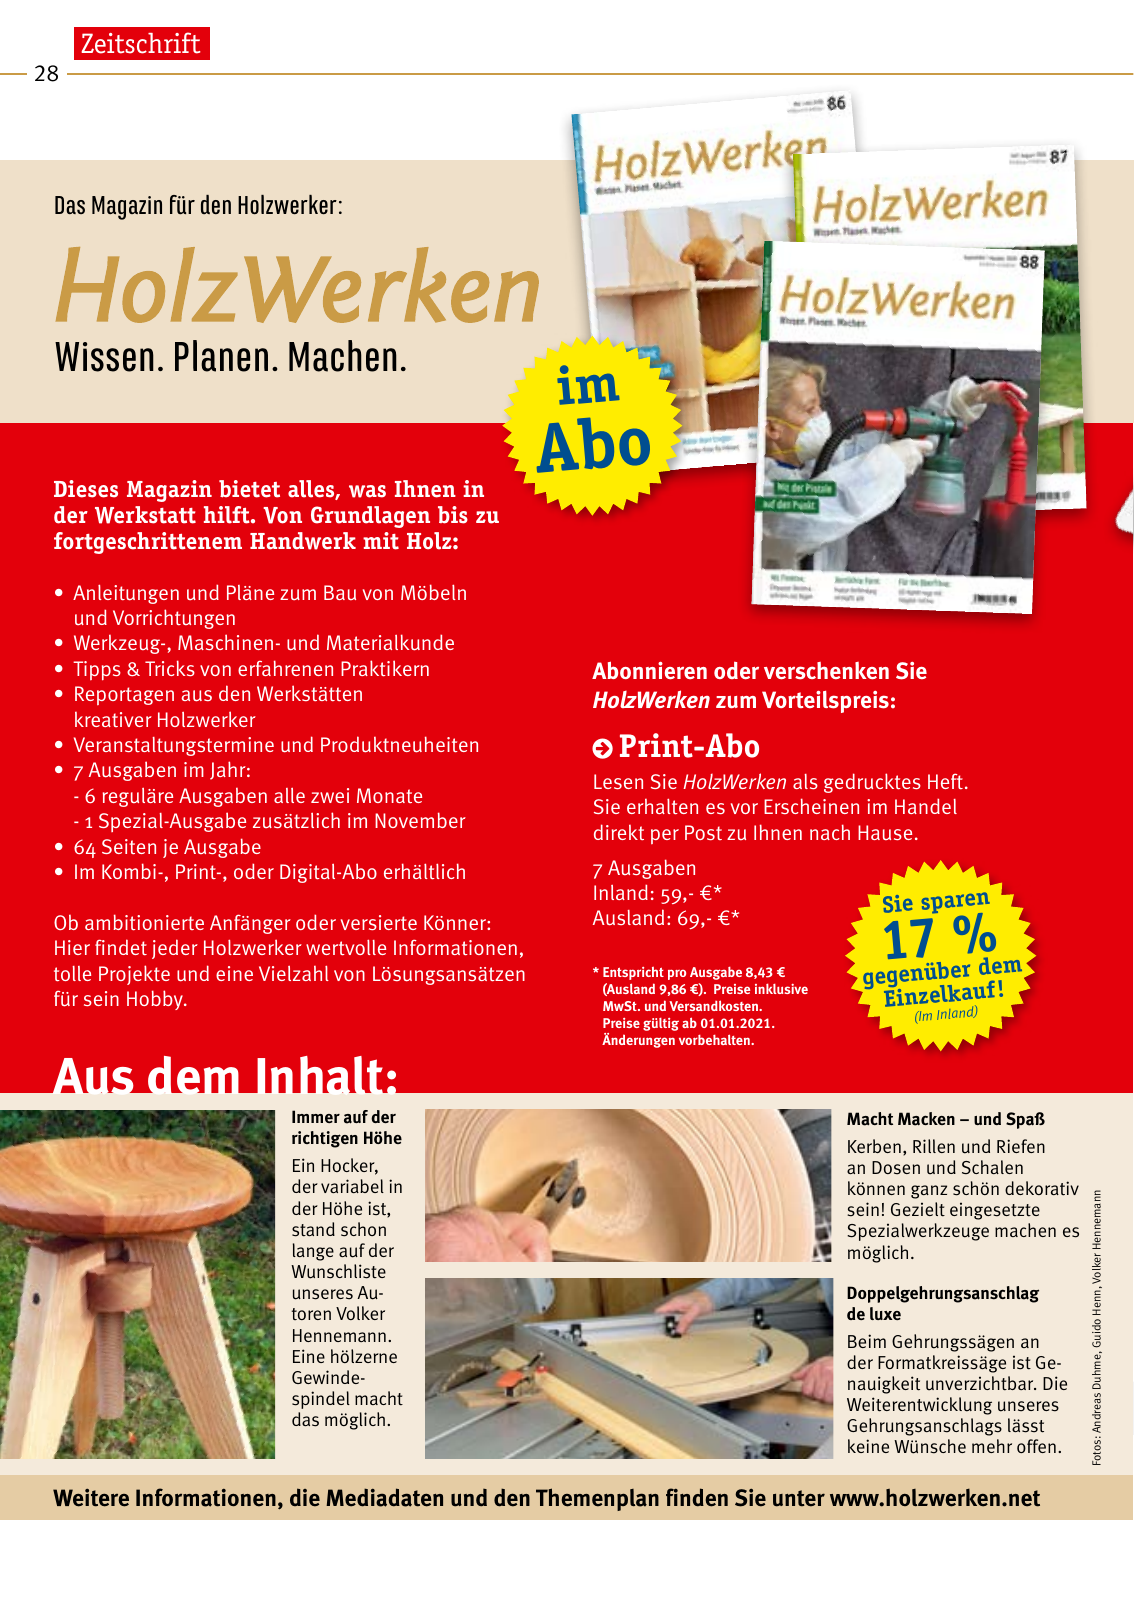 Vorschau HolzWerken Katalog 2021 Seite 28